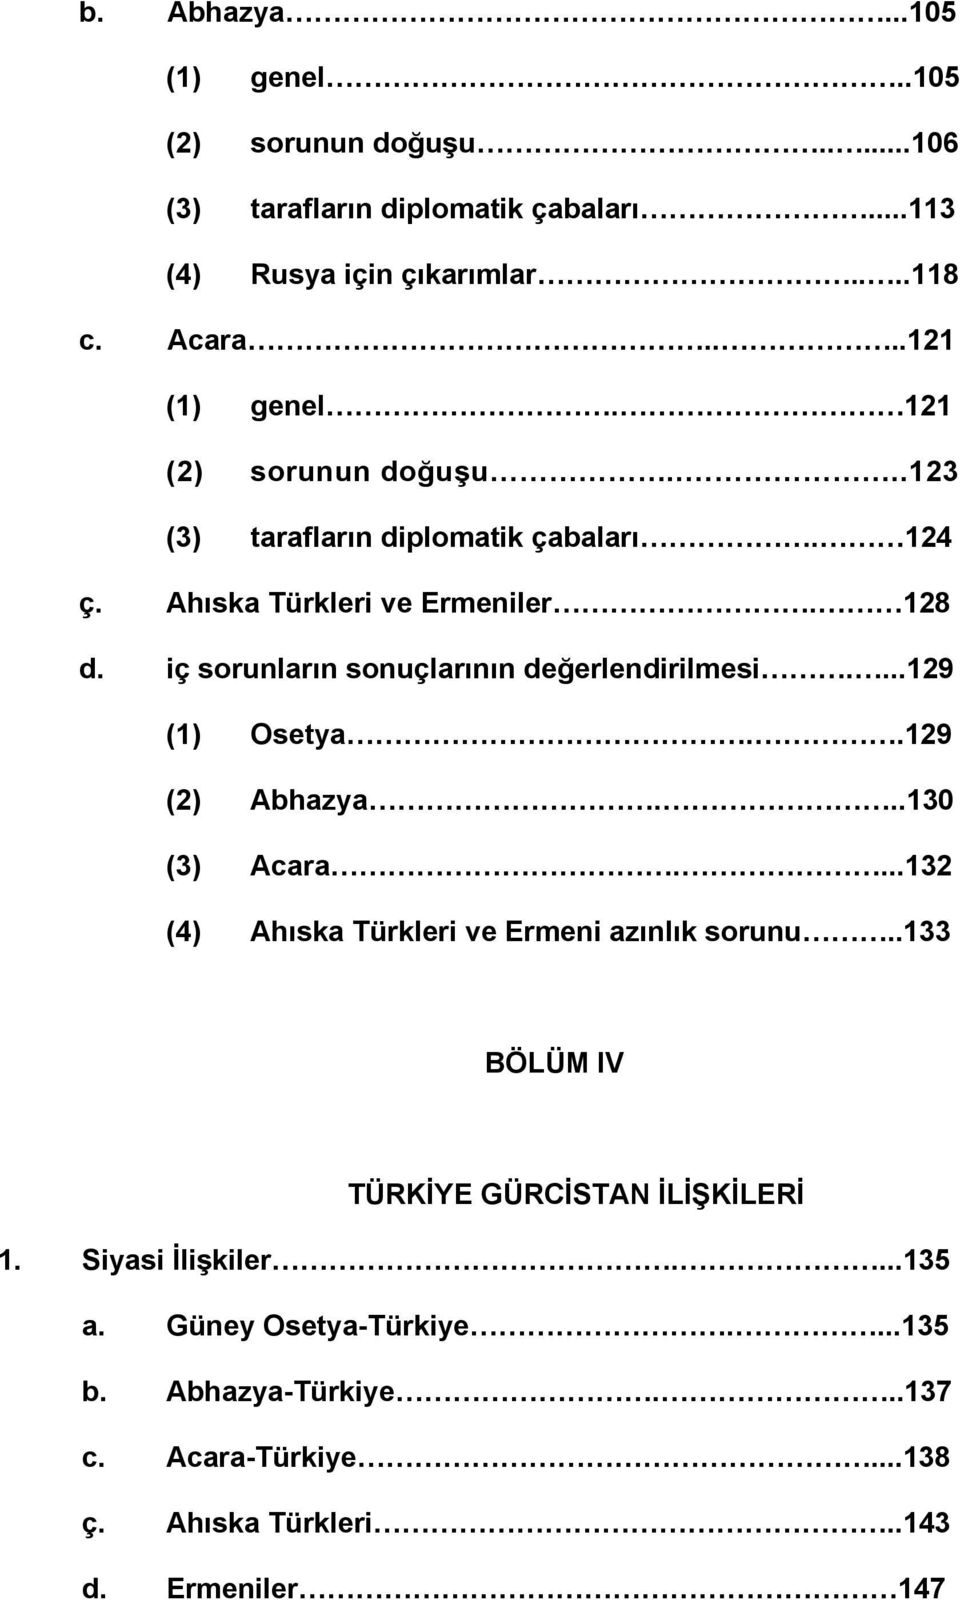 iç sorunların sonuçlarının değerlendirilmesi....129 (1) Osetya..129 (2) Abhazya...130 (3) Acara....132 (4) Ahıska Türkleri ve Ermeni azınlık sorunu.